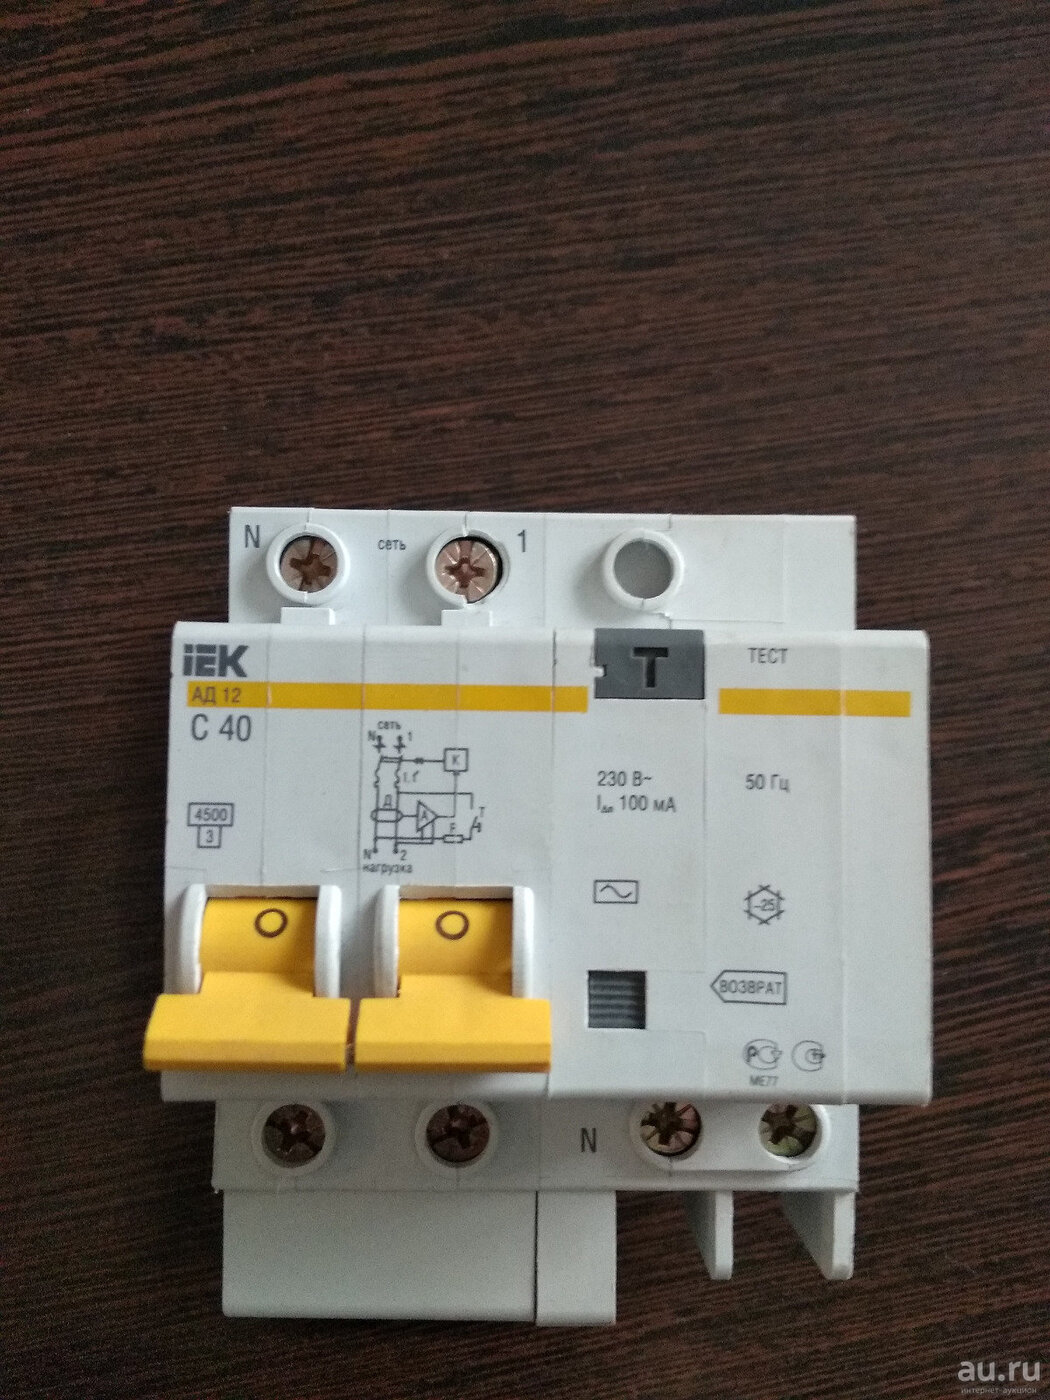 Ад12 с40 IEK. Выключатель автоматический дифференциального тока ад-12. АВДТ И ад в чем разница.